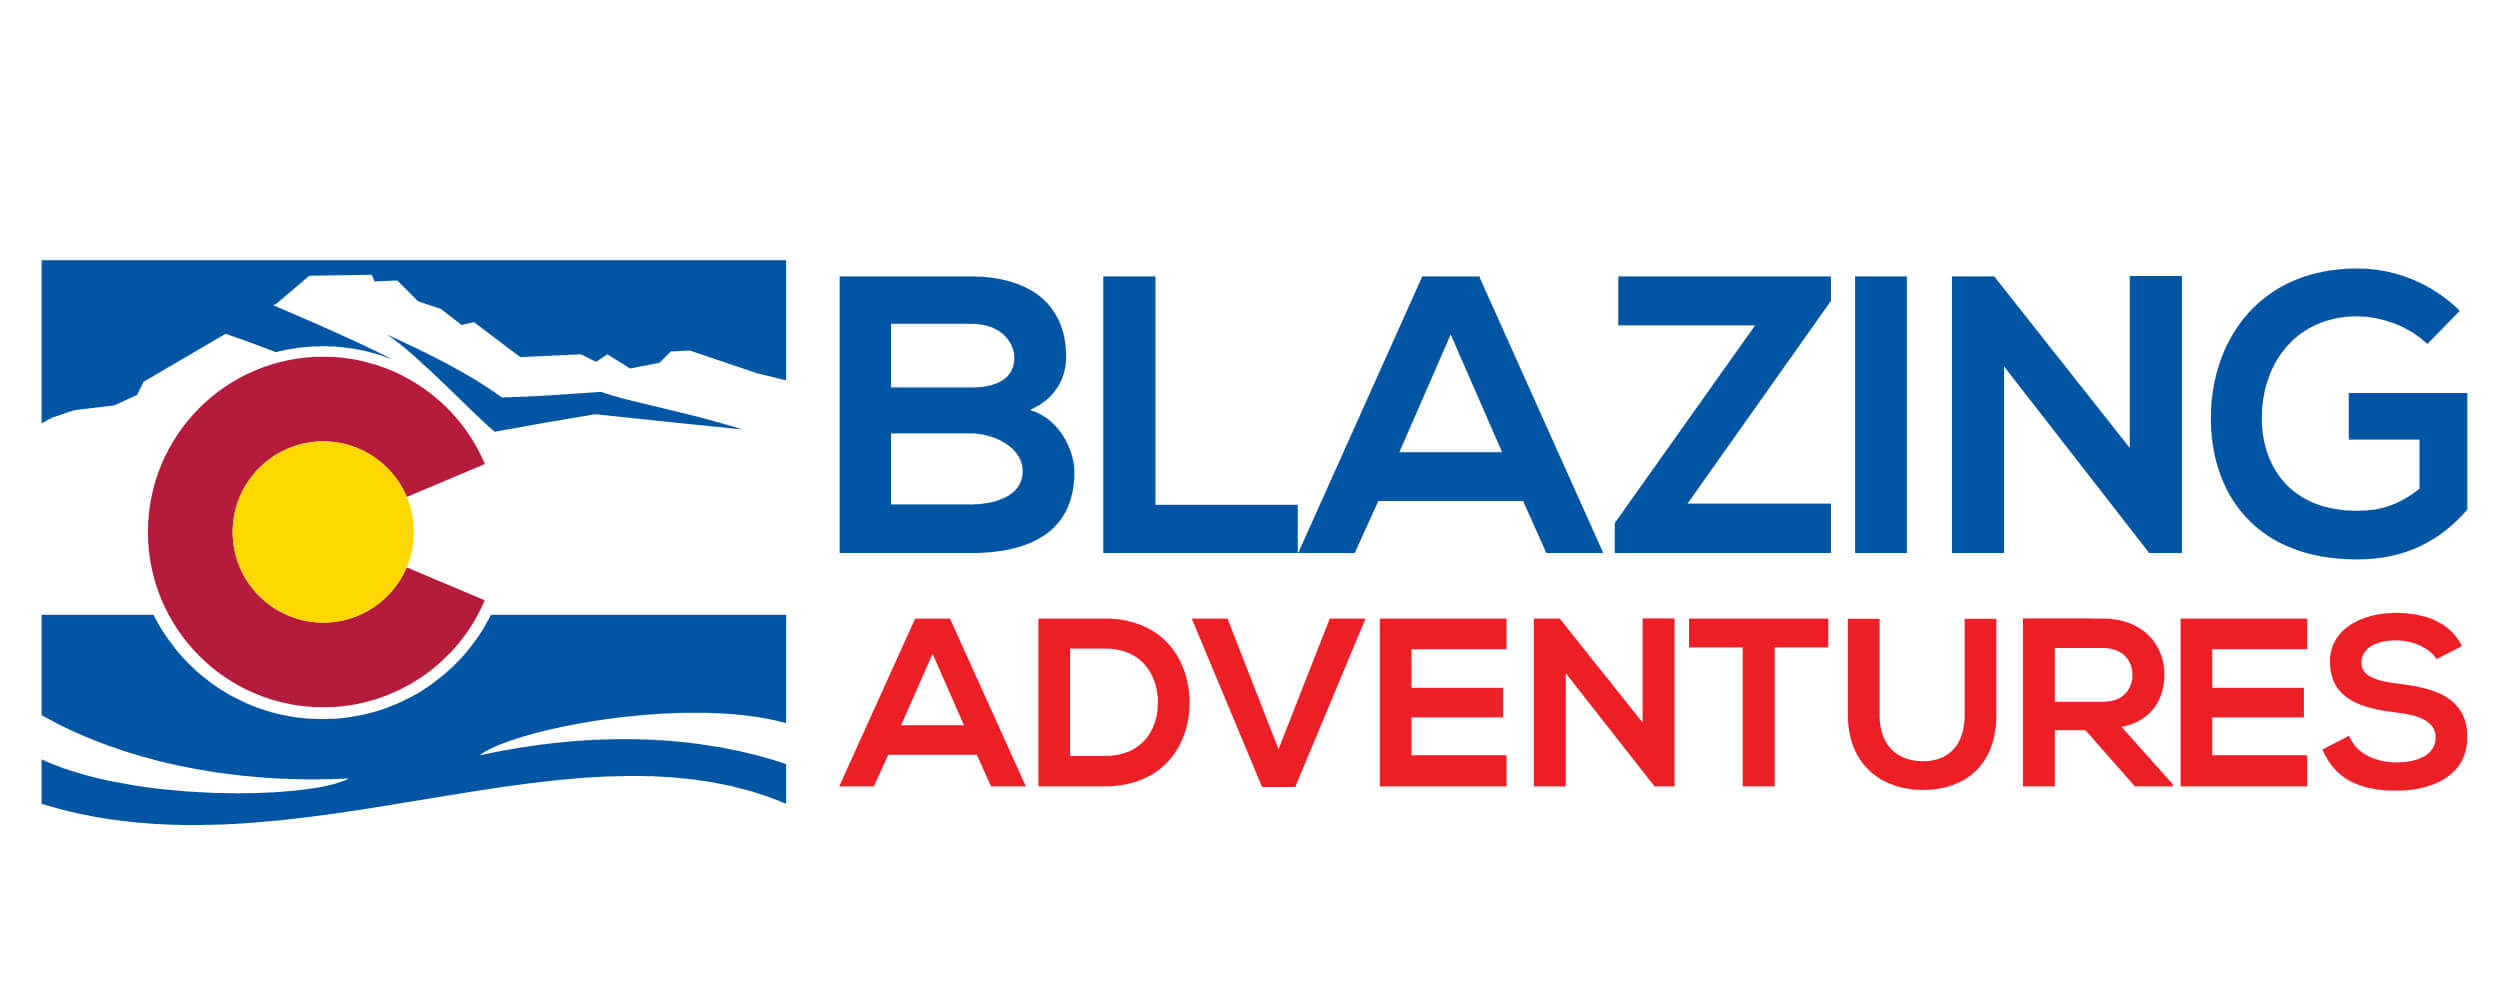 Blazing Adventures logo